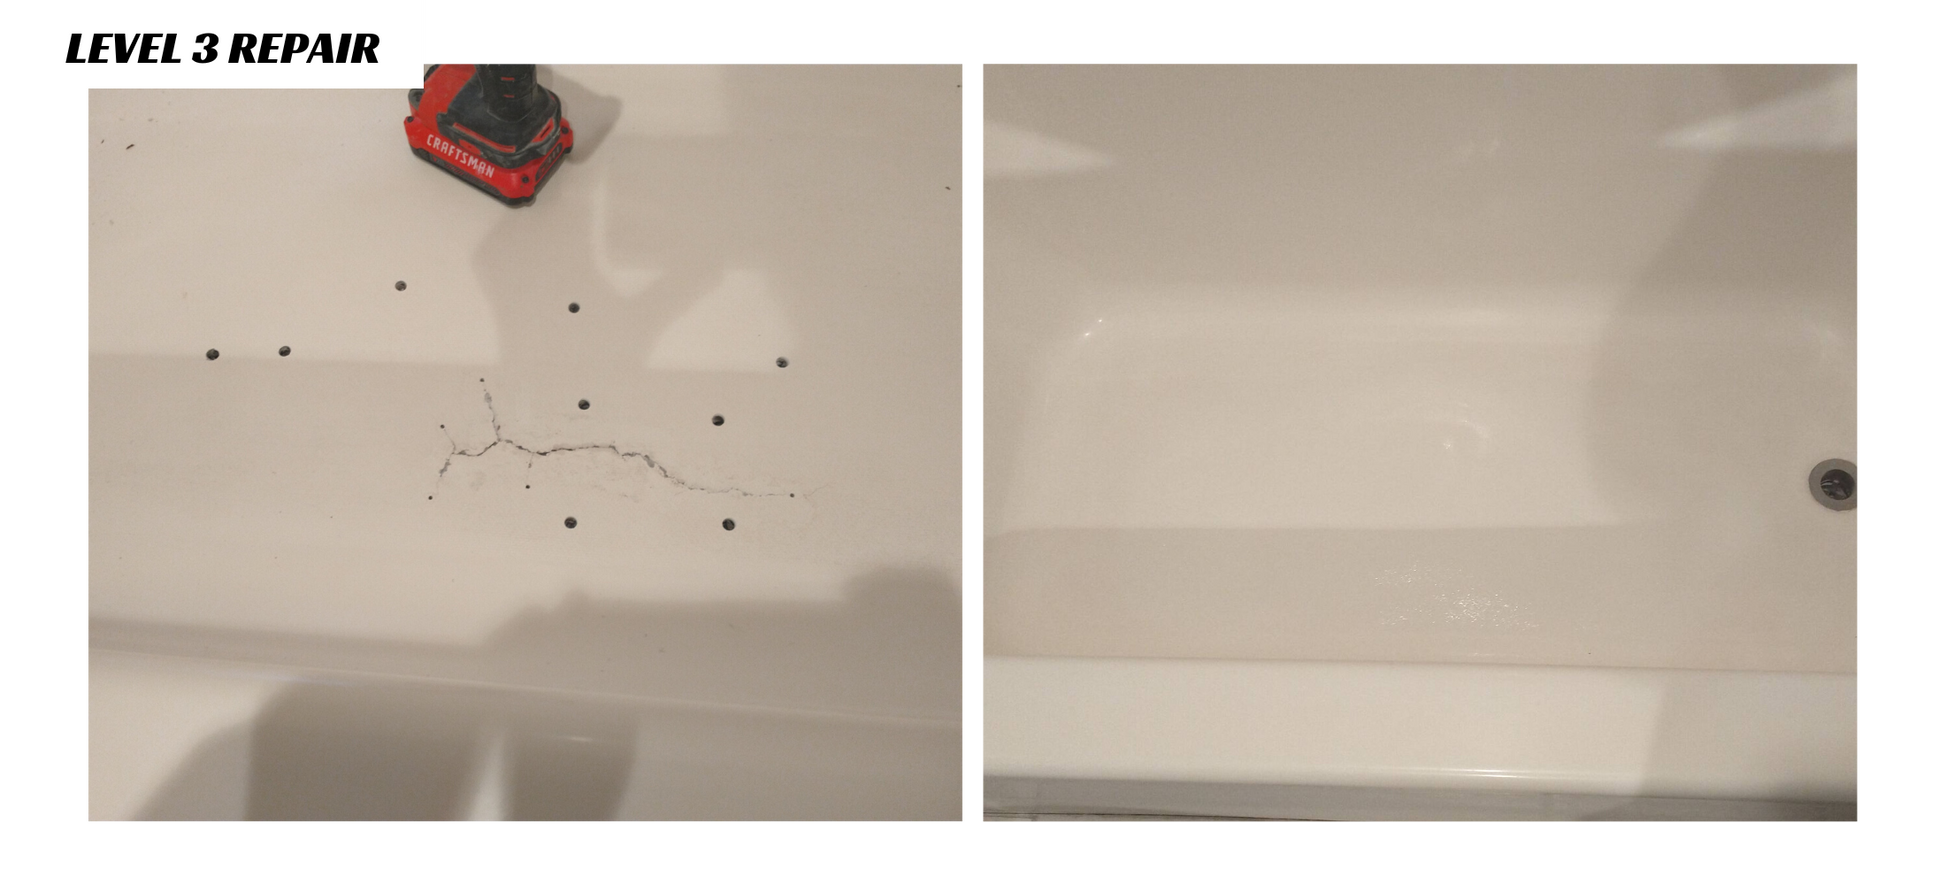  Tub Repair Kit with Color Match, Strong Fiberglass Repair kit,  Seamless Weight Bearing Repairs Floor Cracks : Tools & Home Improvement